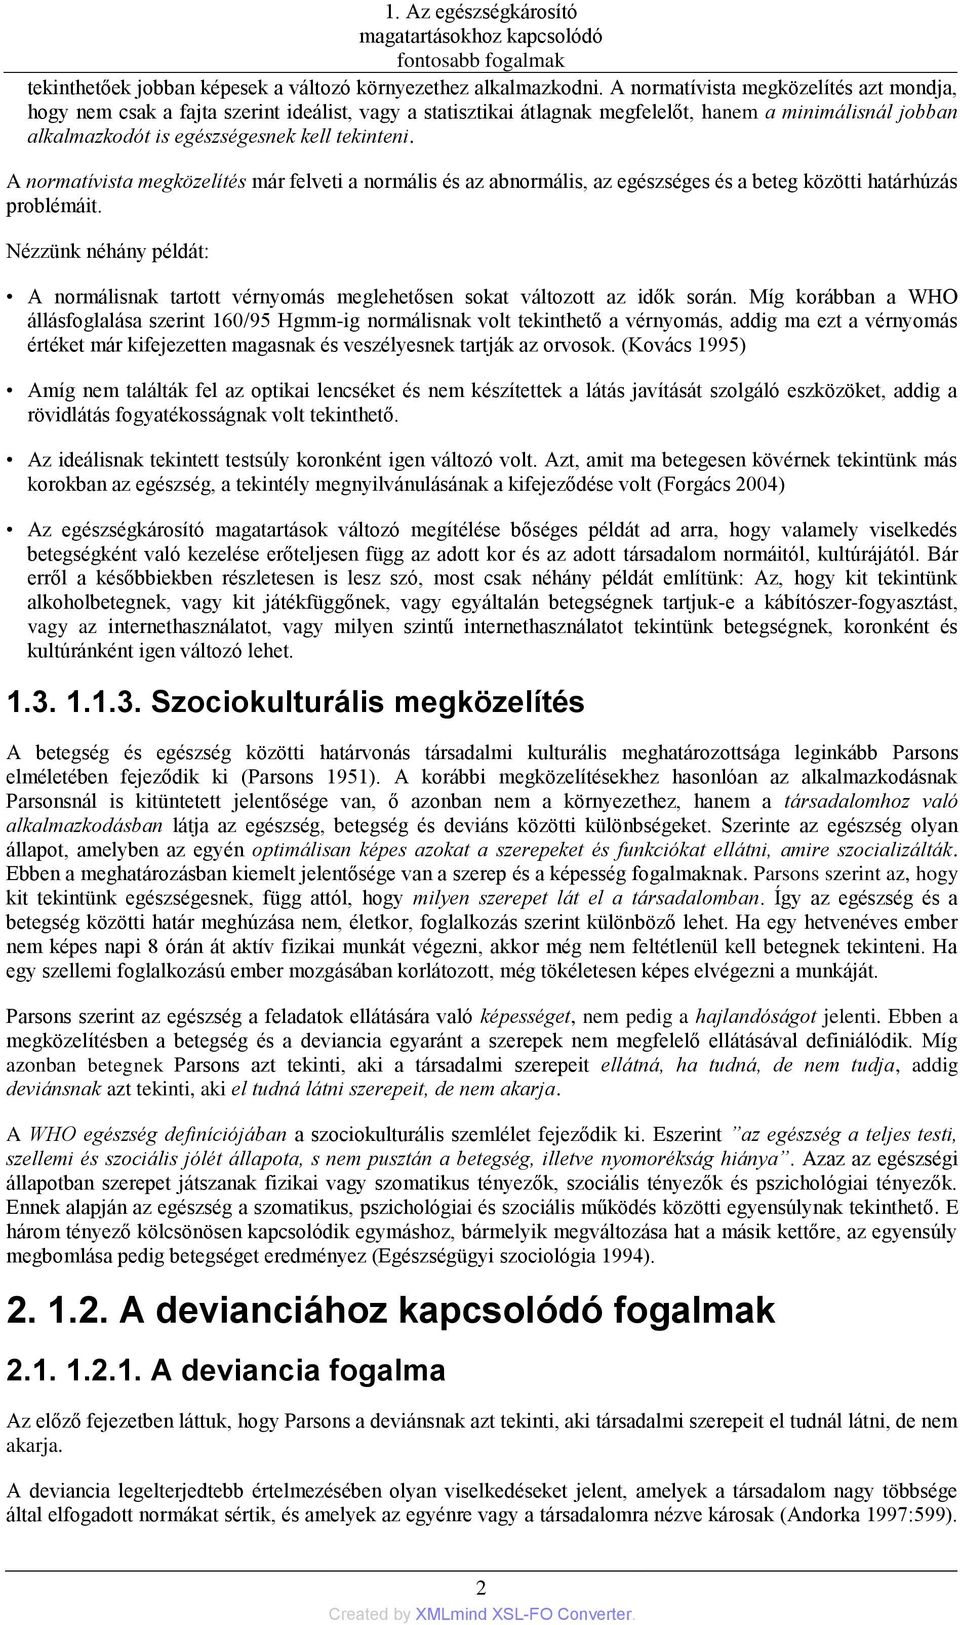 Egészségkárosító magatartások és mérési módszerek Elekes, Zsuzsanna - PDF  Free Download